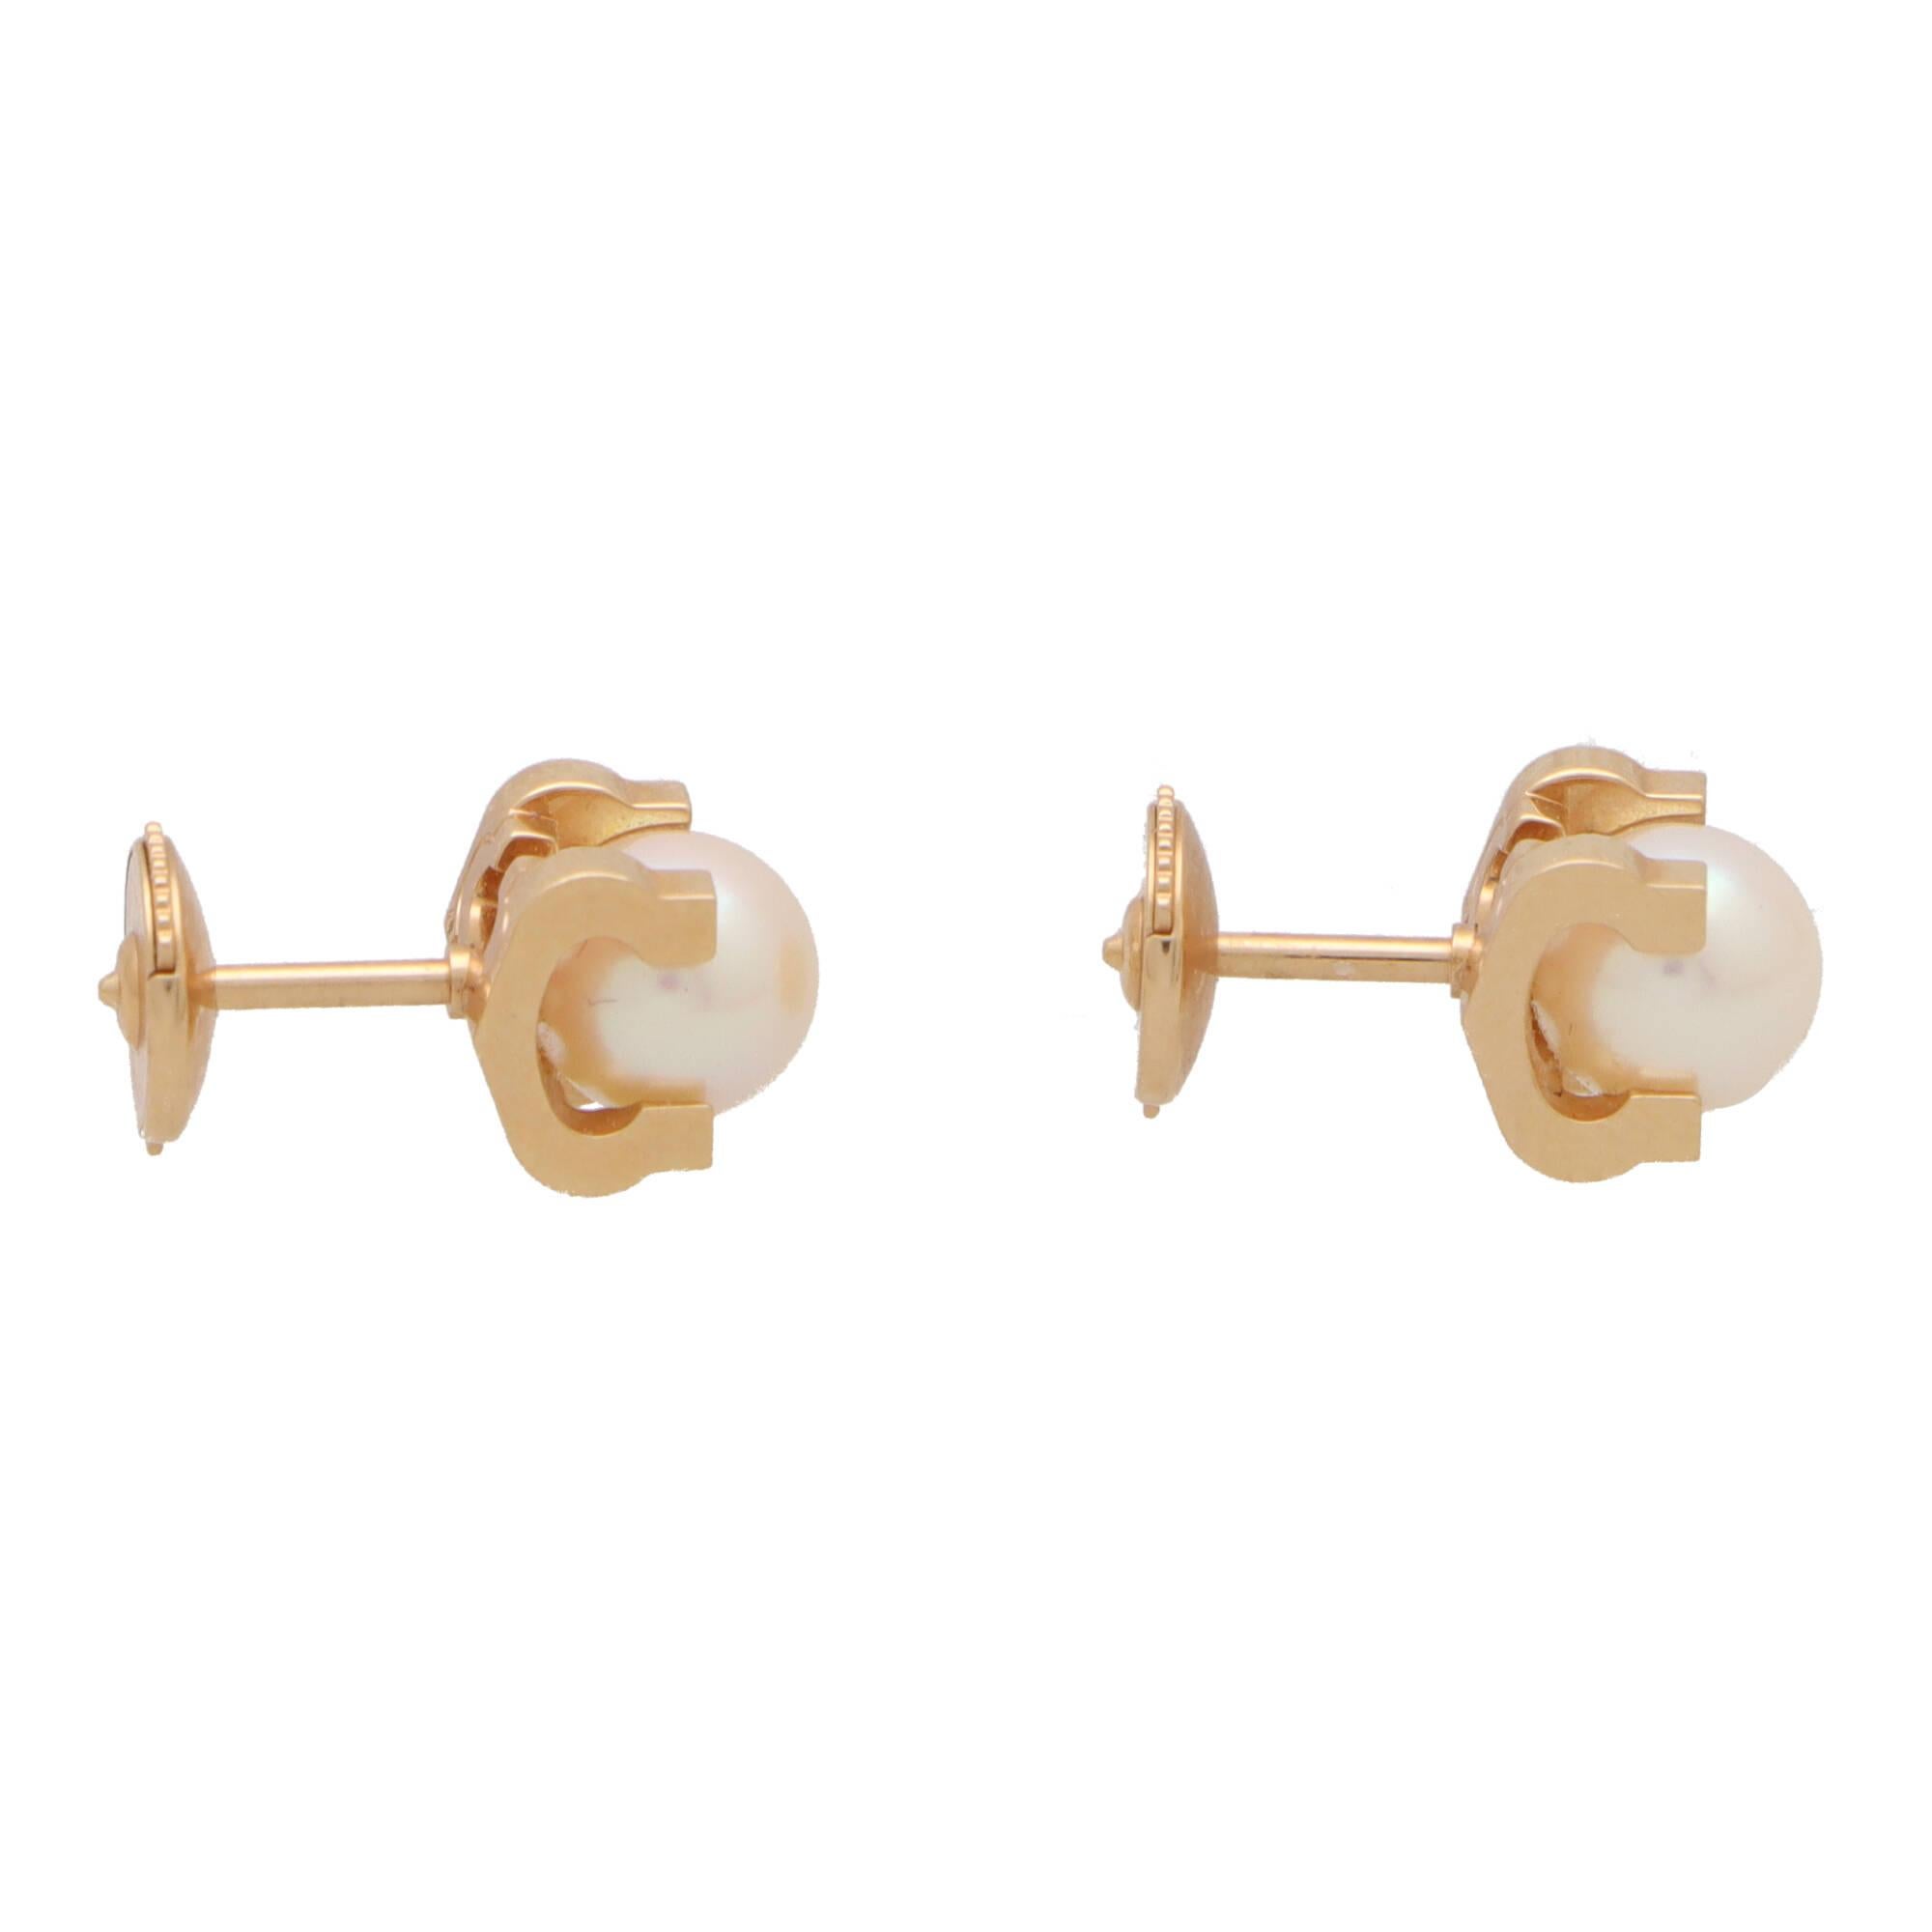 cartier pearl stud earrings